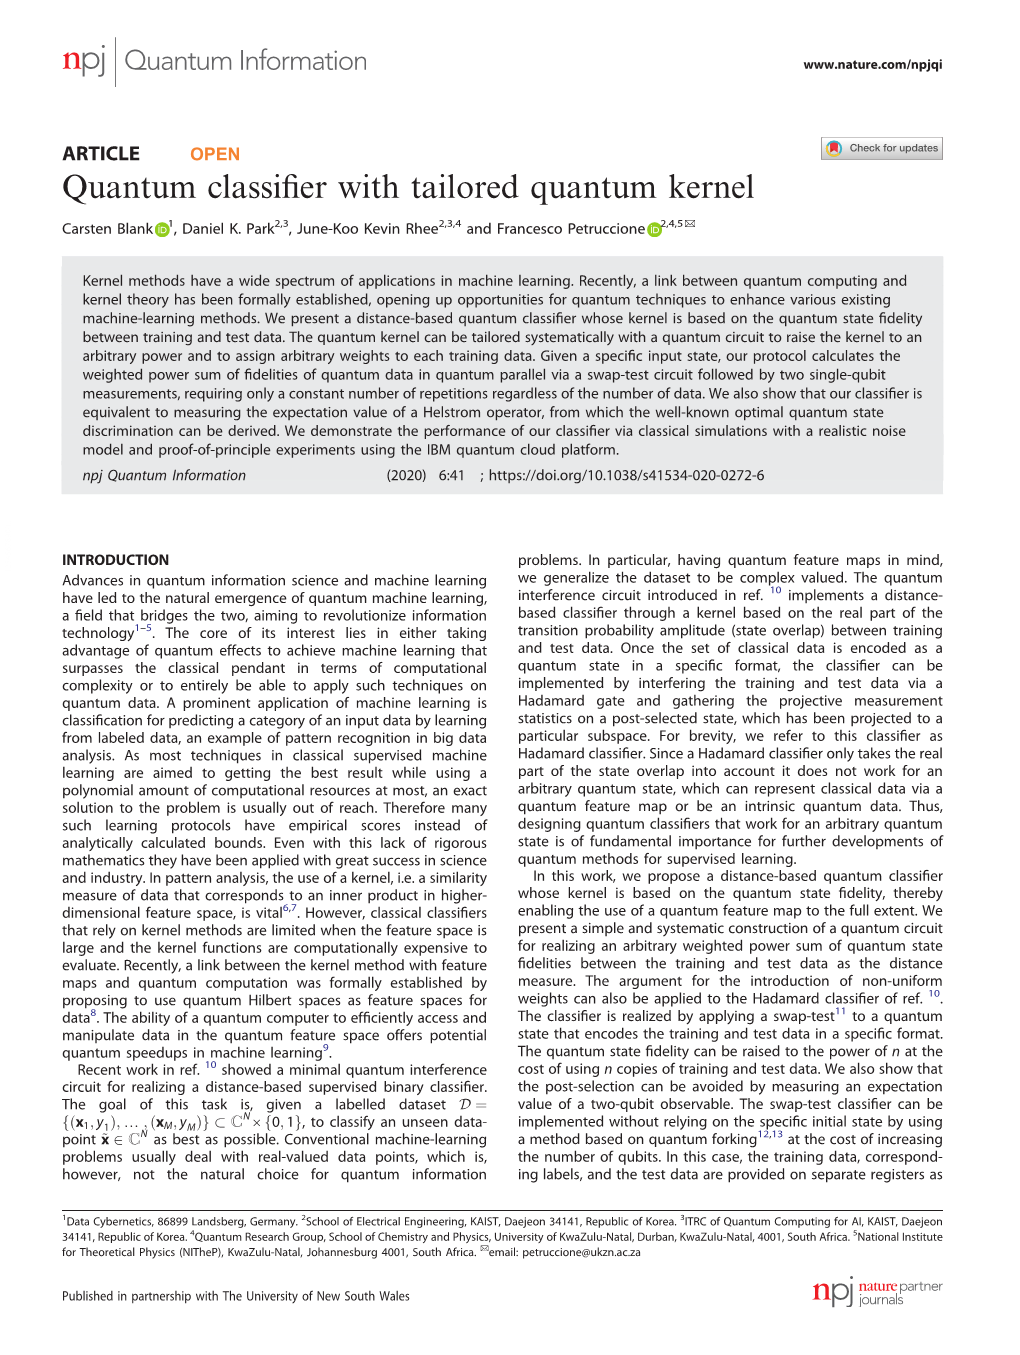 Quantum Classifier with Tailored Quantum Kernel